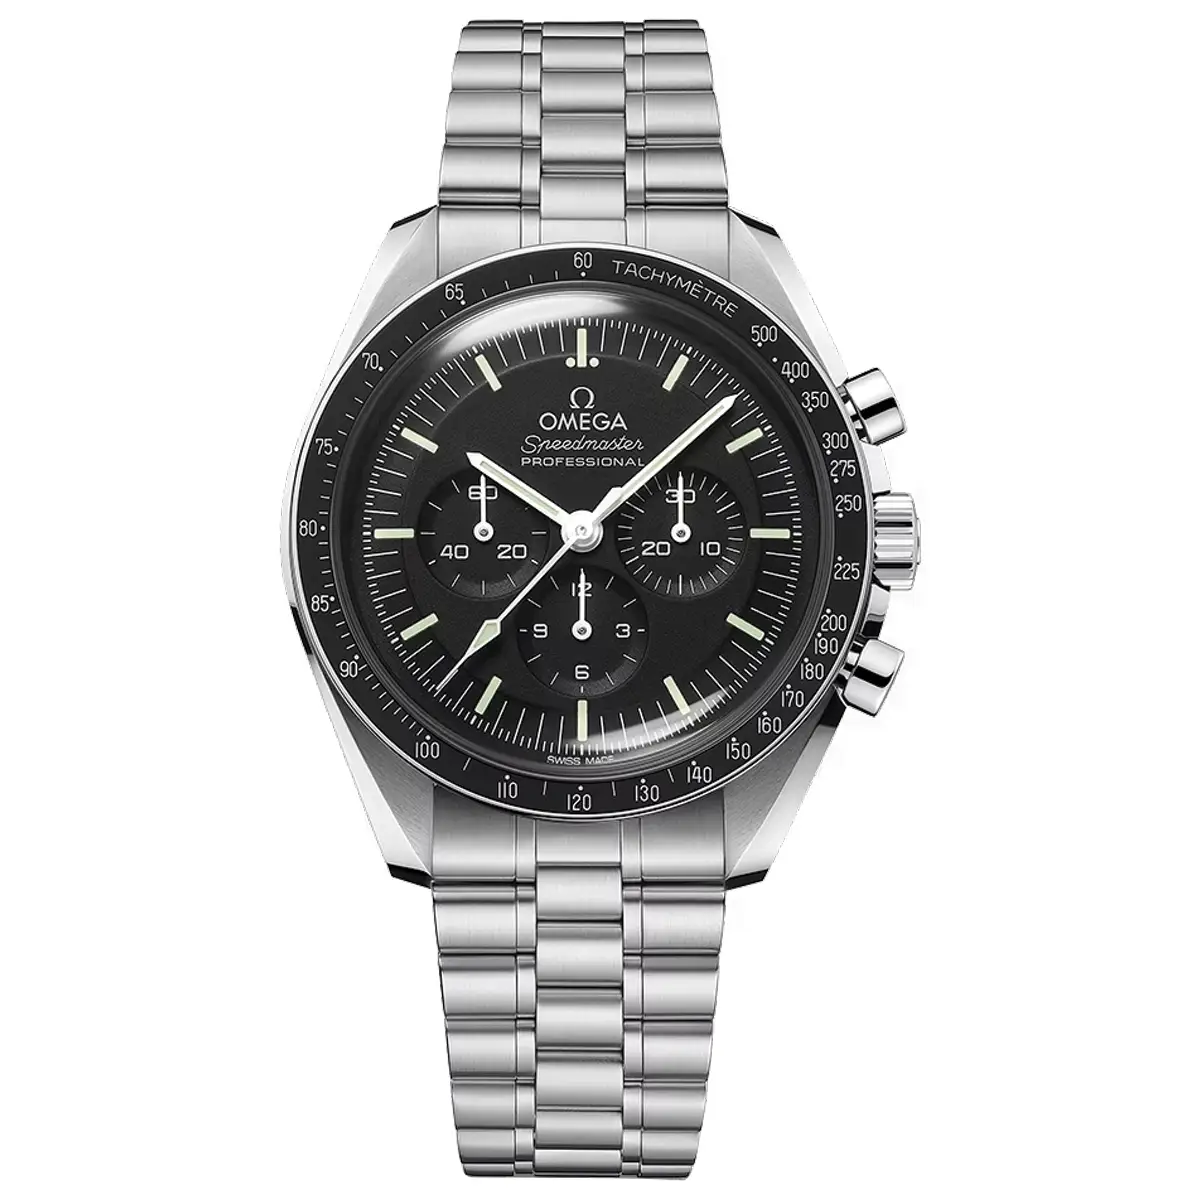 Đồng hồ Omega Speedmaster Moonwatch Professional Chronometer Chronograph 310.30.42.50.01.001 mặt số màu đen. Dây đeo bằng thép. Thân vỏ bằng thép.